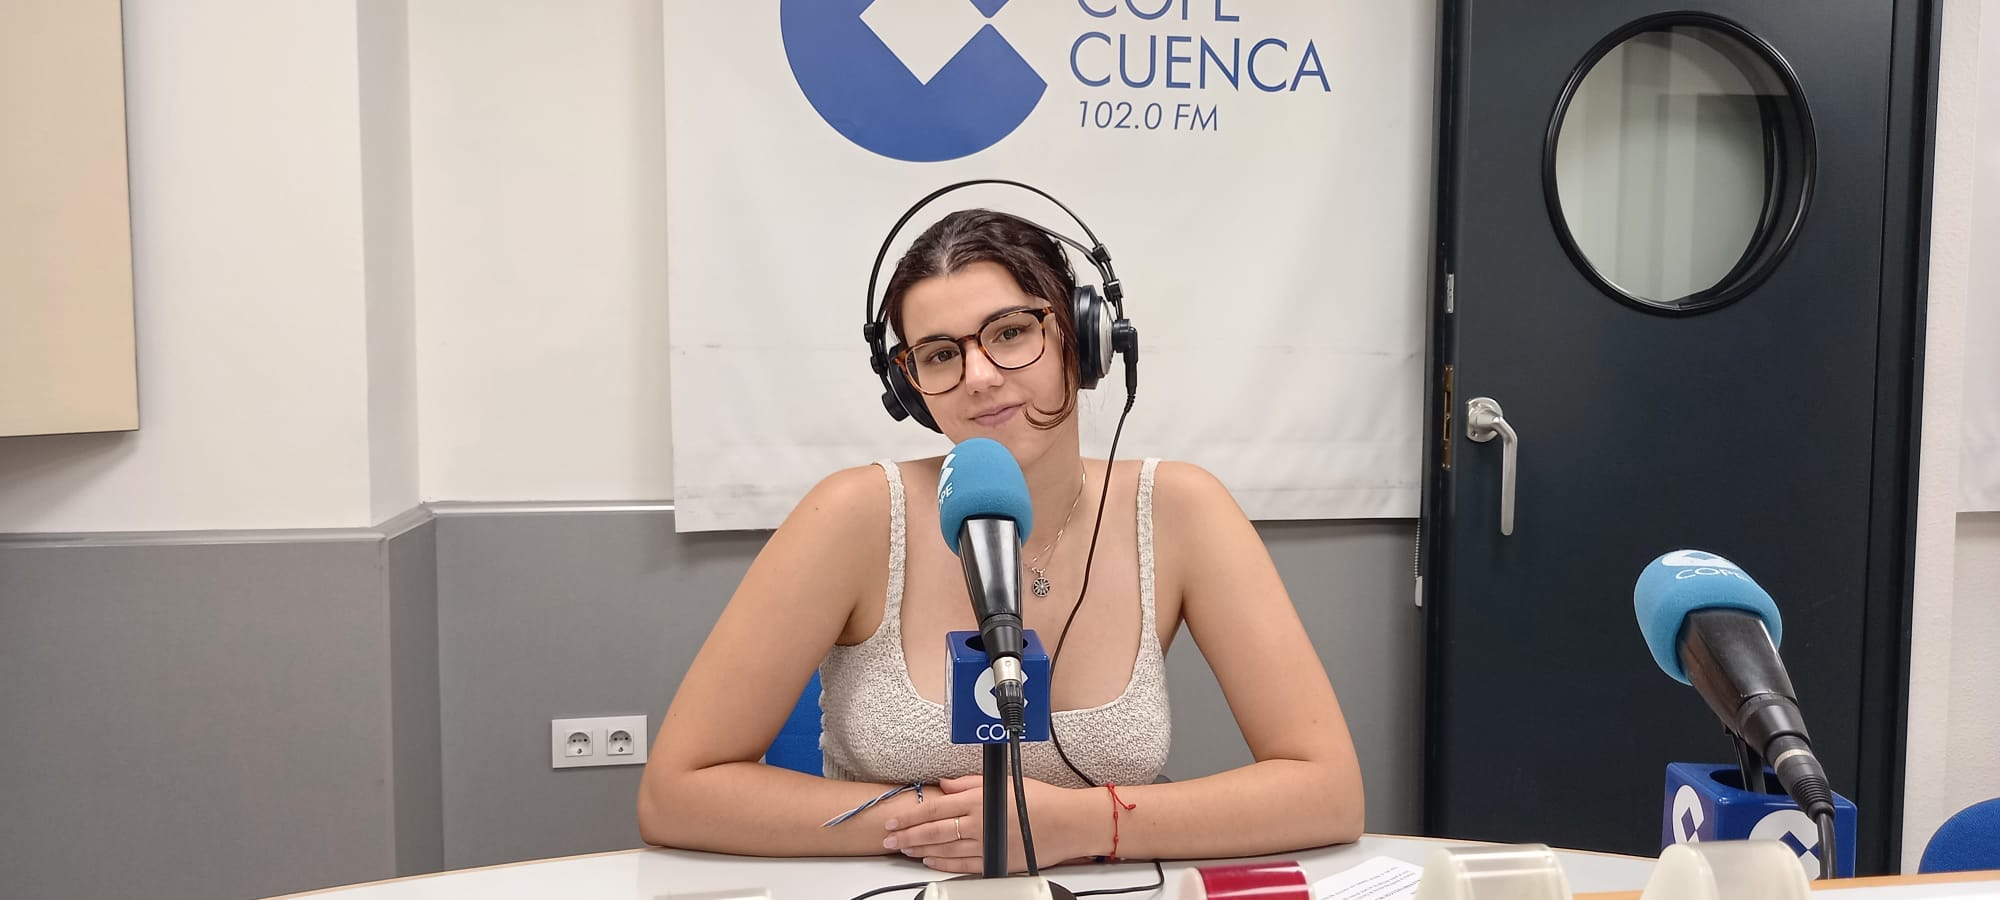 Irina COPE Cuenca